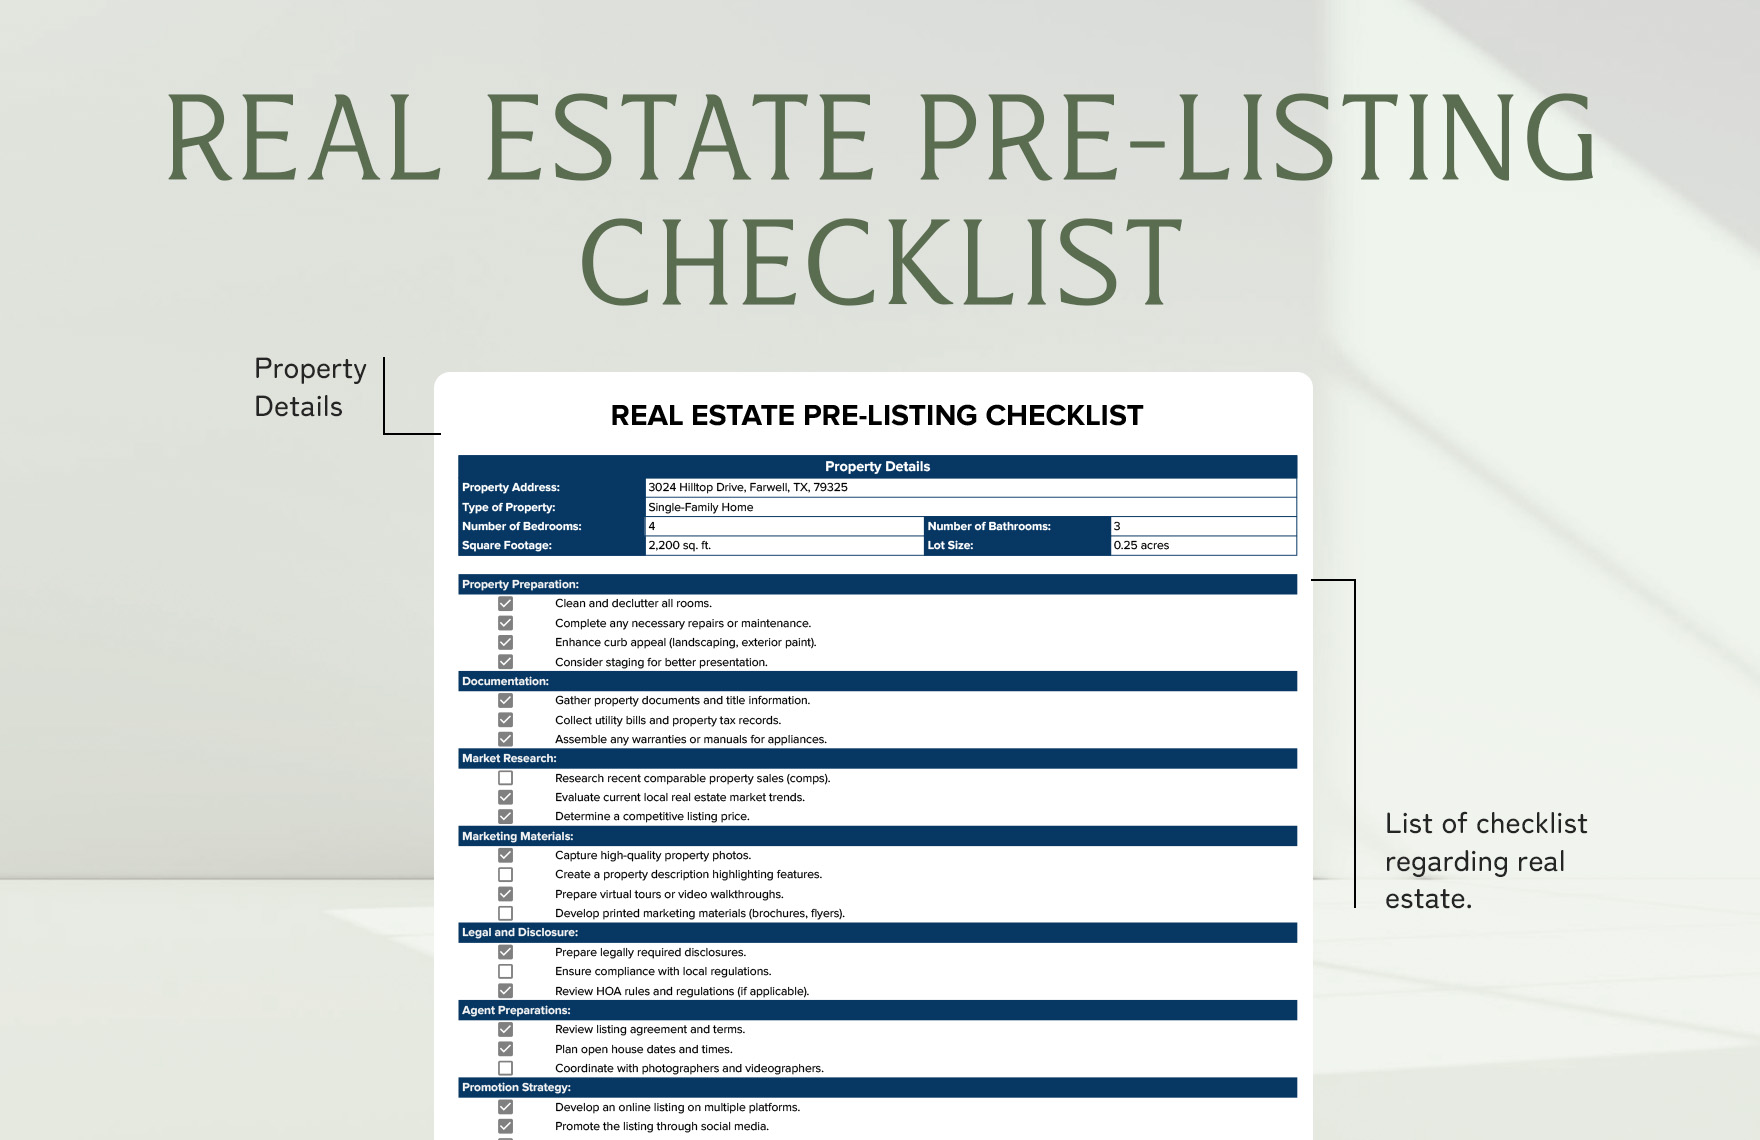 Real Estate Pre-Listing Checklist Template